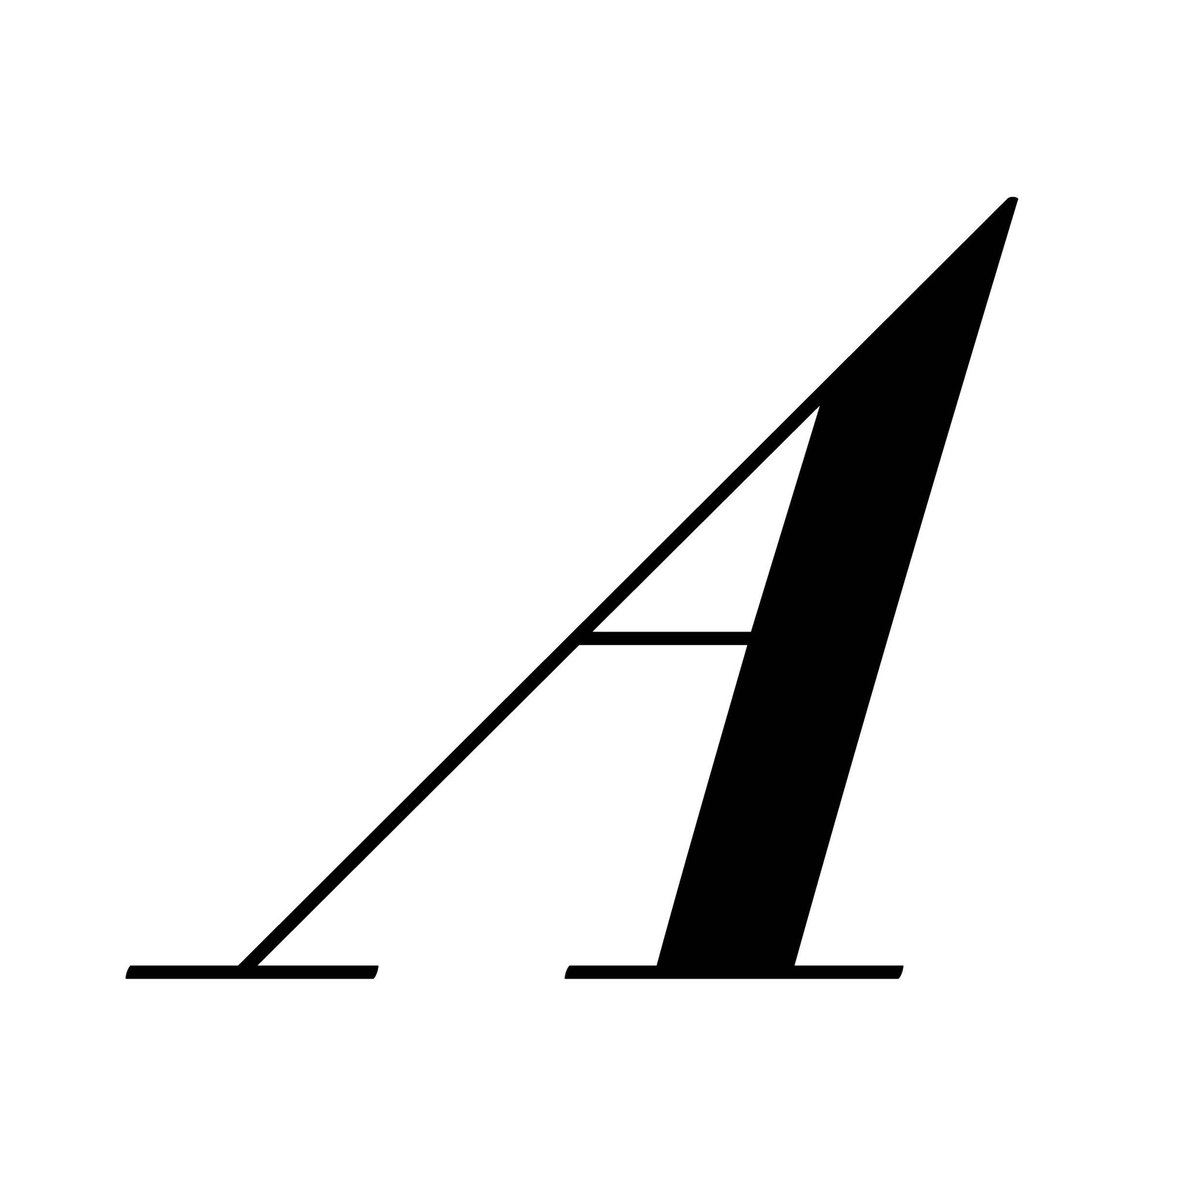 Italique de Gros canon № 314, «A», gravé par Joseph Molé, fonderie Molé jeune, graveur et fondeur, 78 rue de la Harpe, Paris, 1819-1823. #typography #punchcutting instagram.com/p/C6_xGQ9Ijl0/…